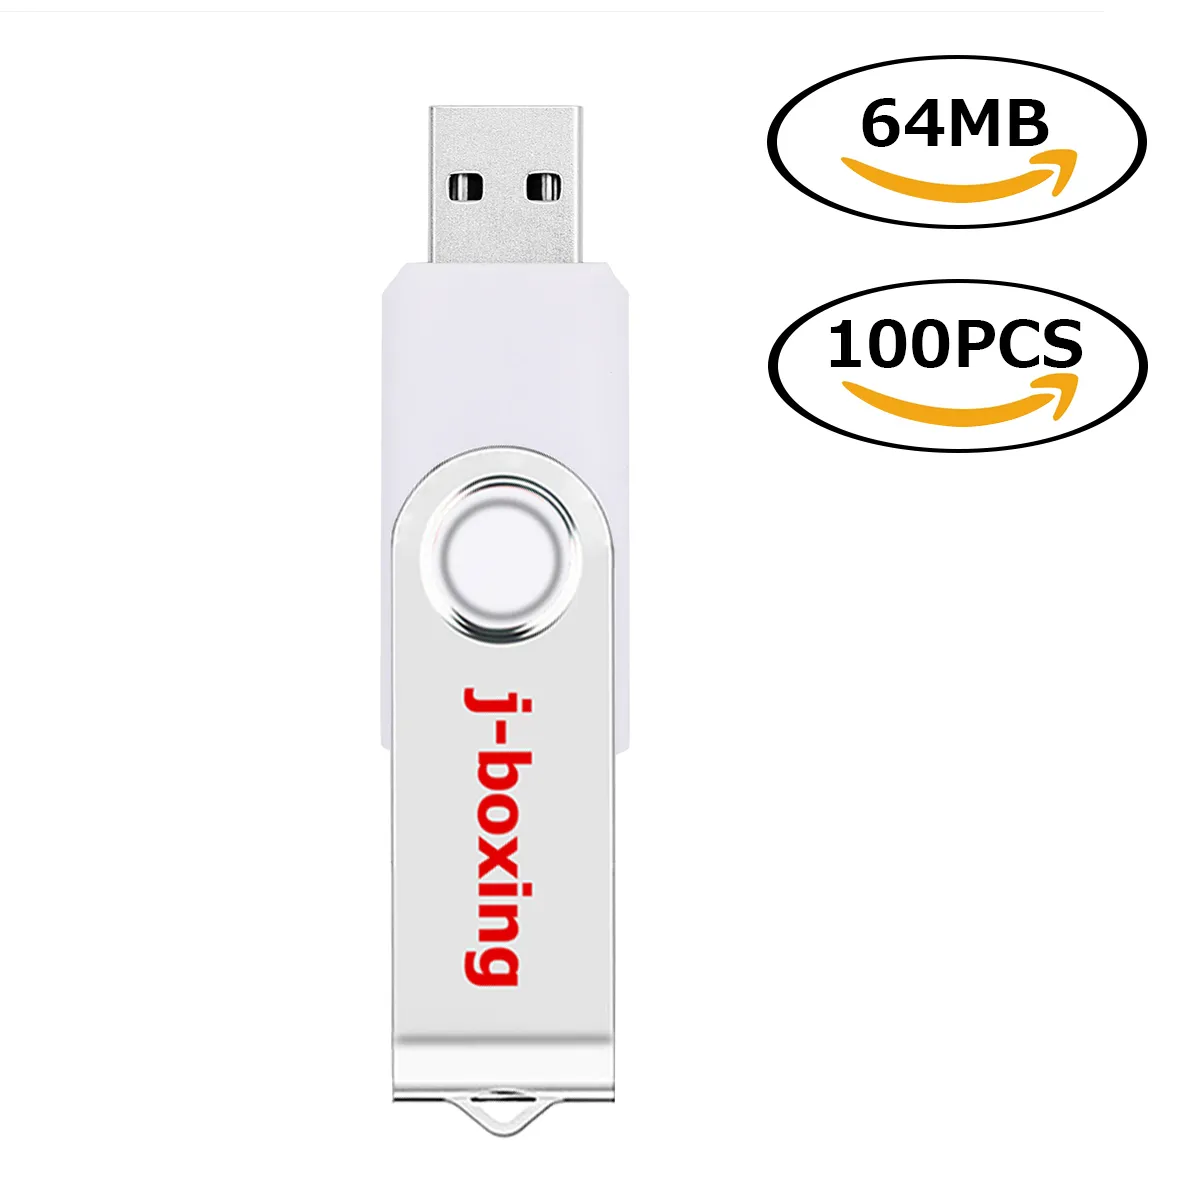 White Bulk 100PCS 64MB USB Flash Drives Swivel USB 2.0 Pen Drives Metal Rotating Memory Sticks Thumb Storage for Computer Laptop Tablet